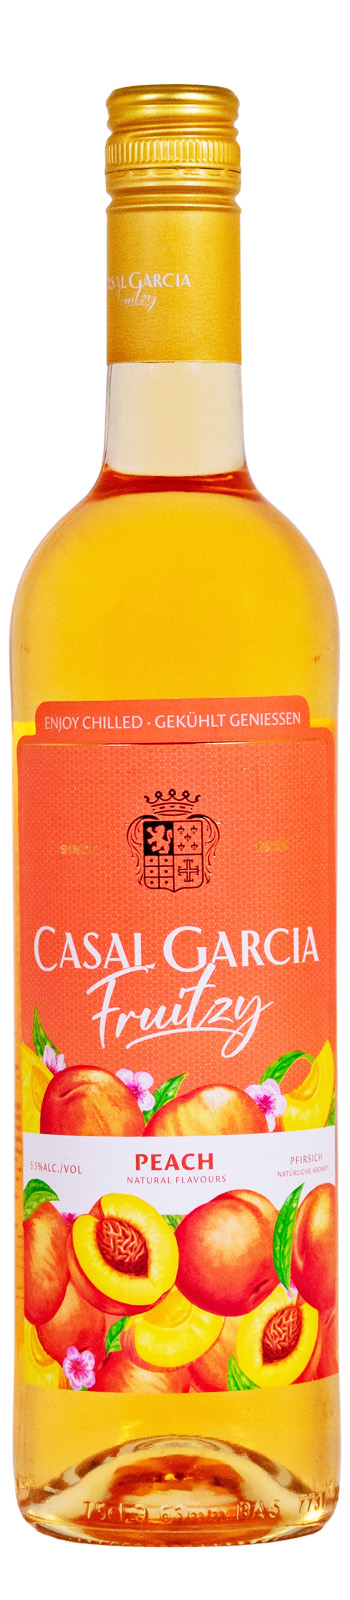 Casal Garcia Fruitzy Peach - 0,75L 5,5% vol